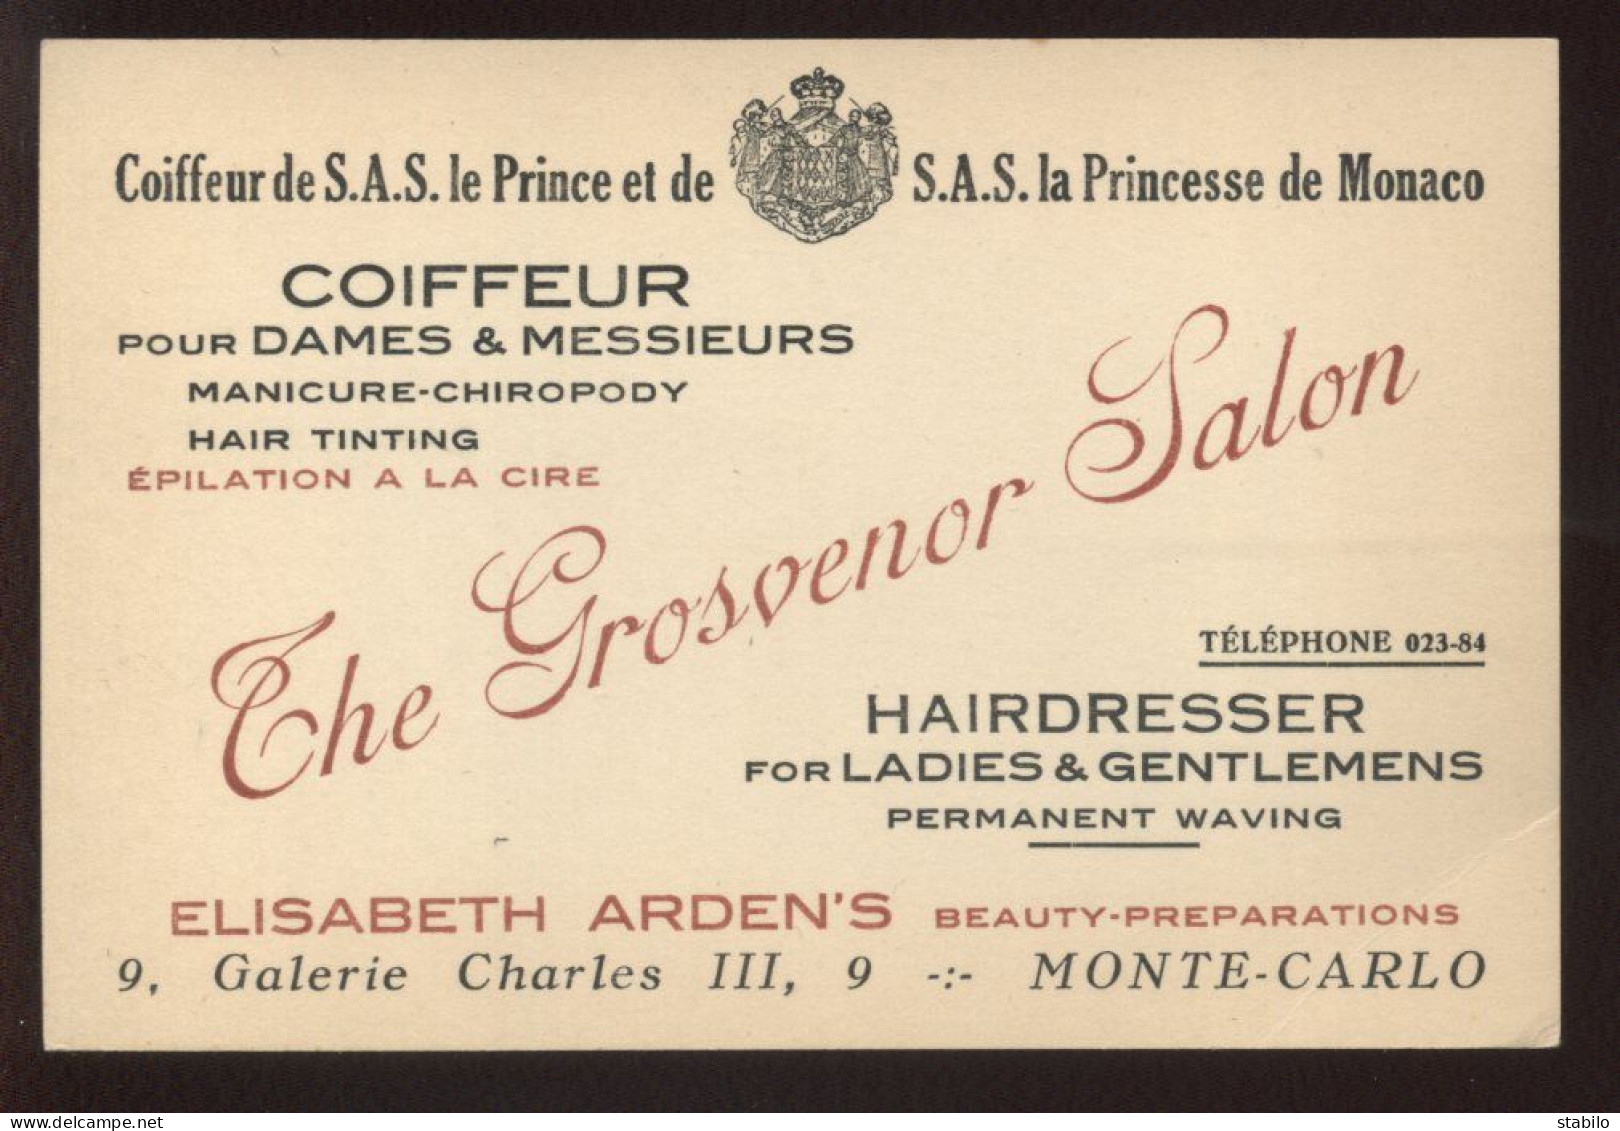 COIFFEUR "THE GROSVENOR SALON"  9 GALERIE CHARLES III, MONTE-CARLO - PRINCIPAUTE DE MONACO - Visiting Cards